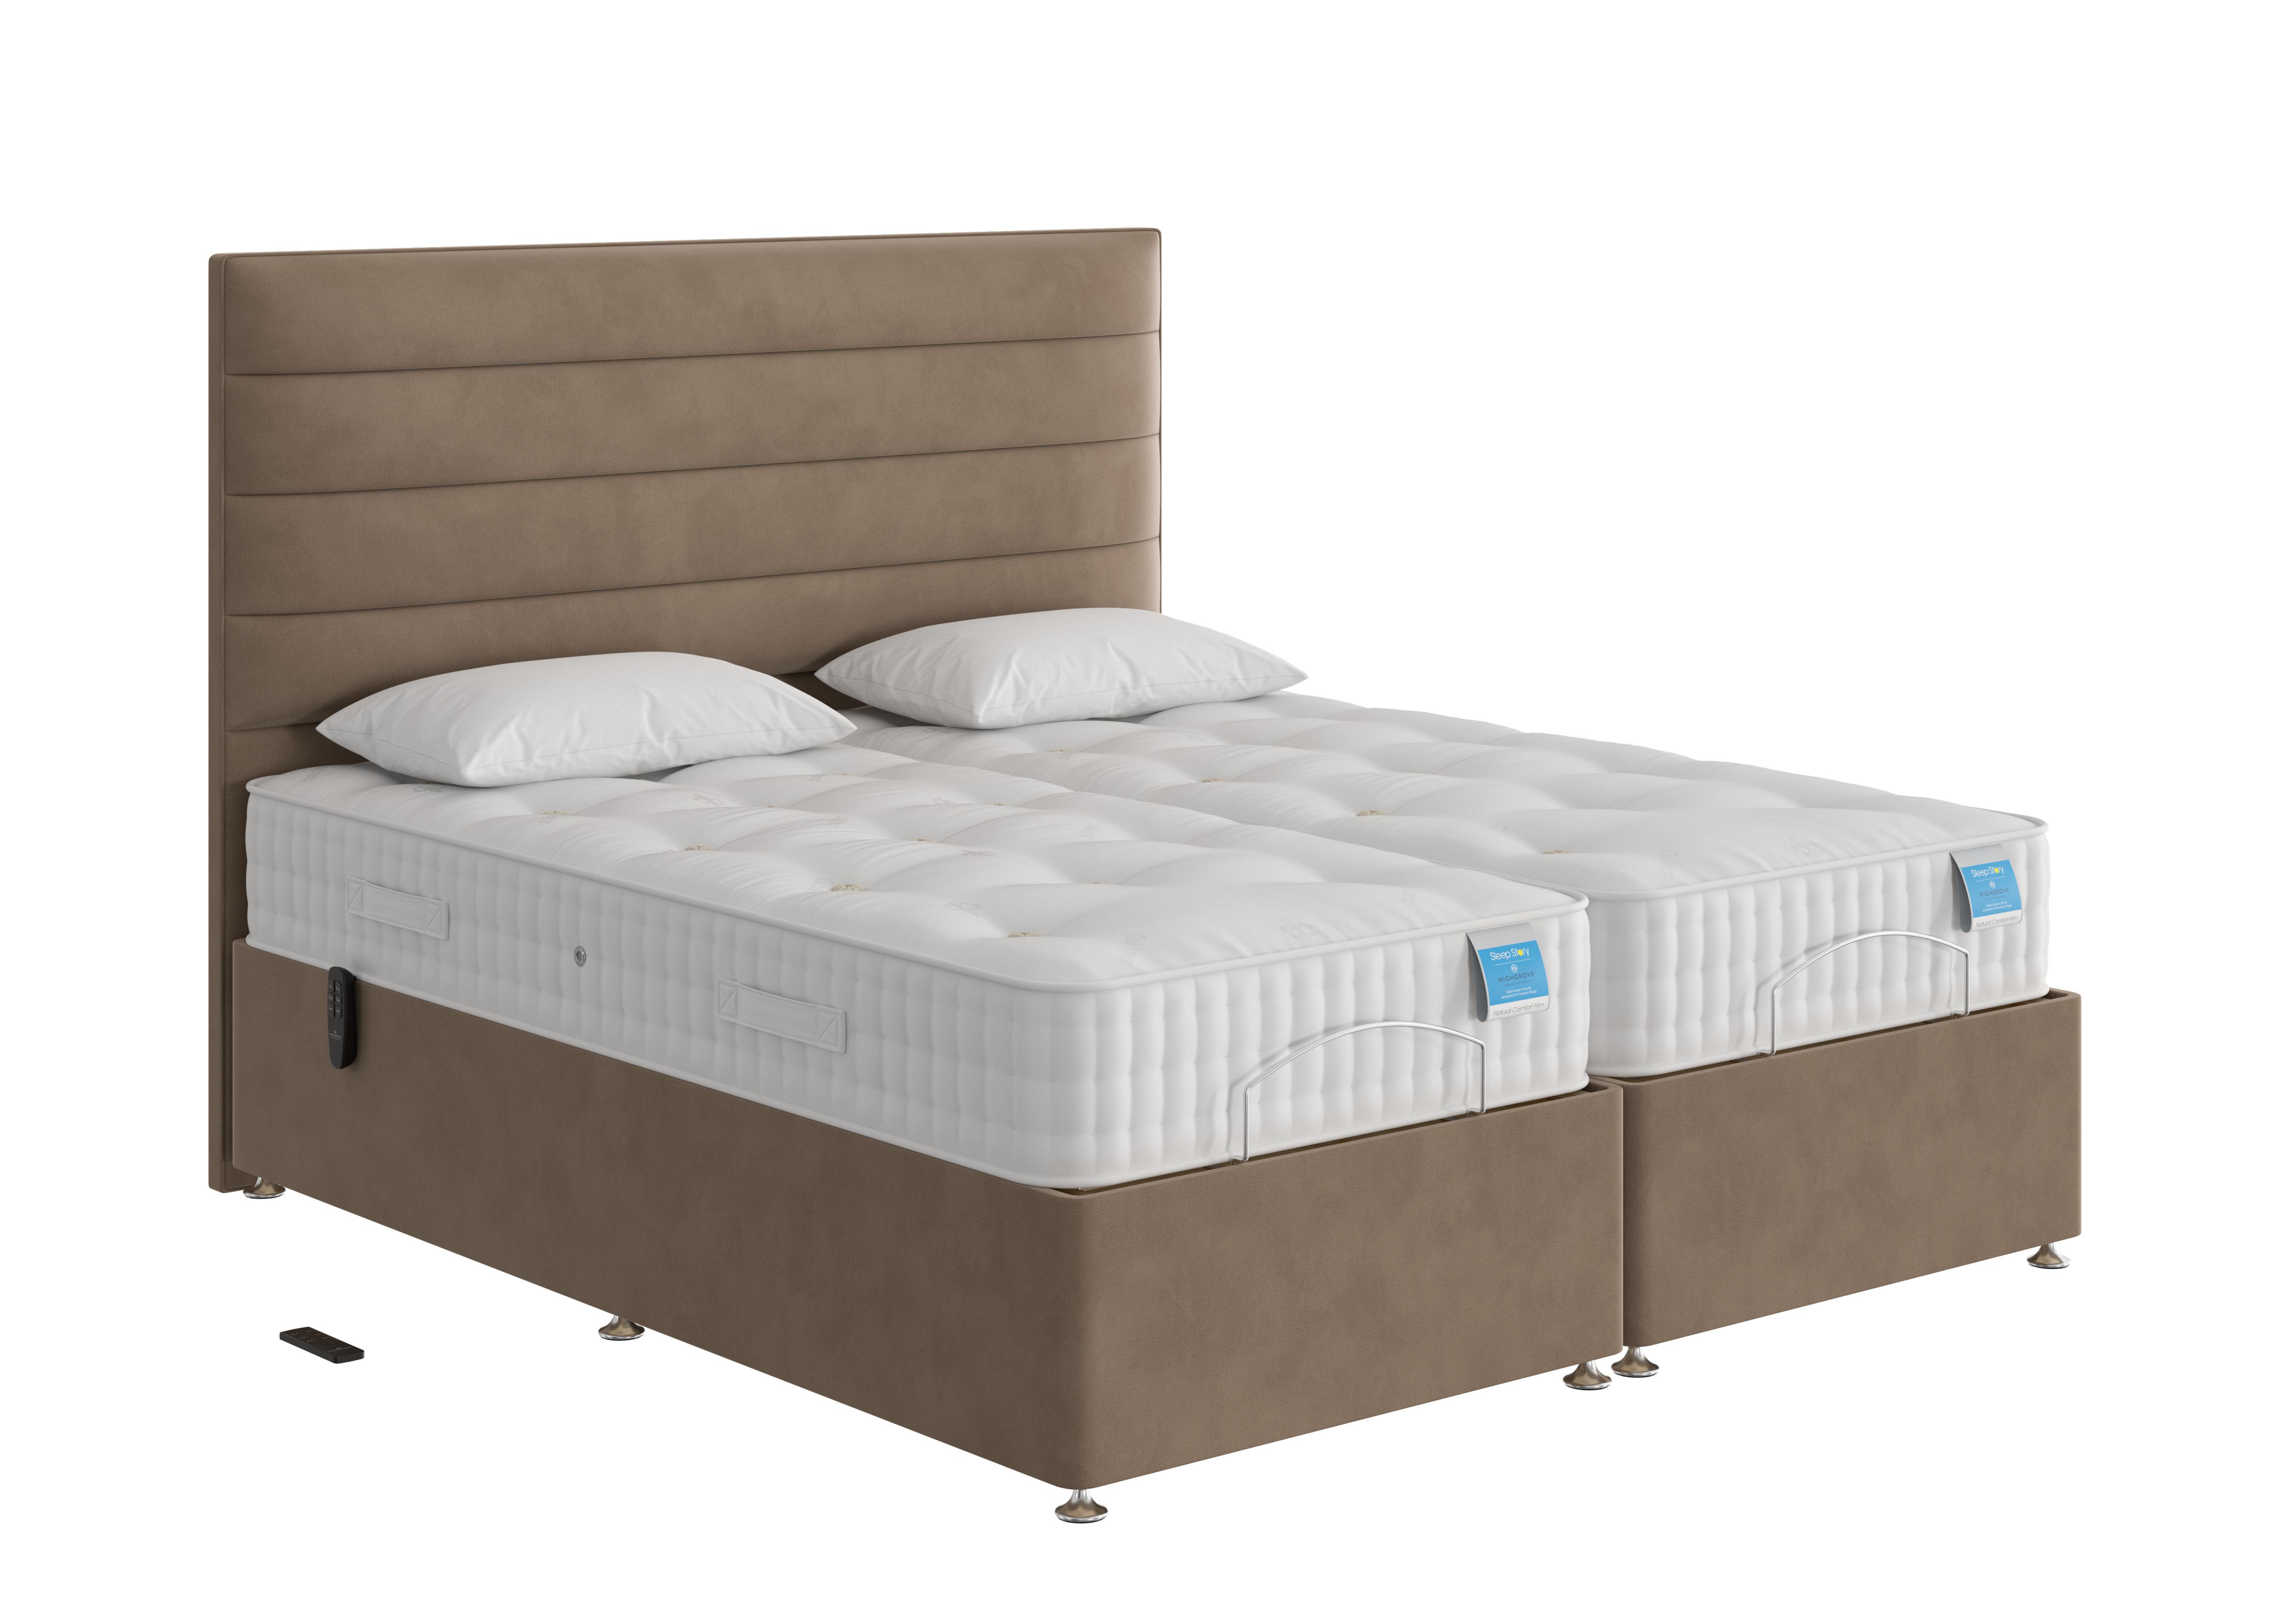 Natural Comfort Adjustable Divan Bed in Lace Caramel on Furniture Village